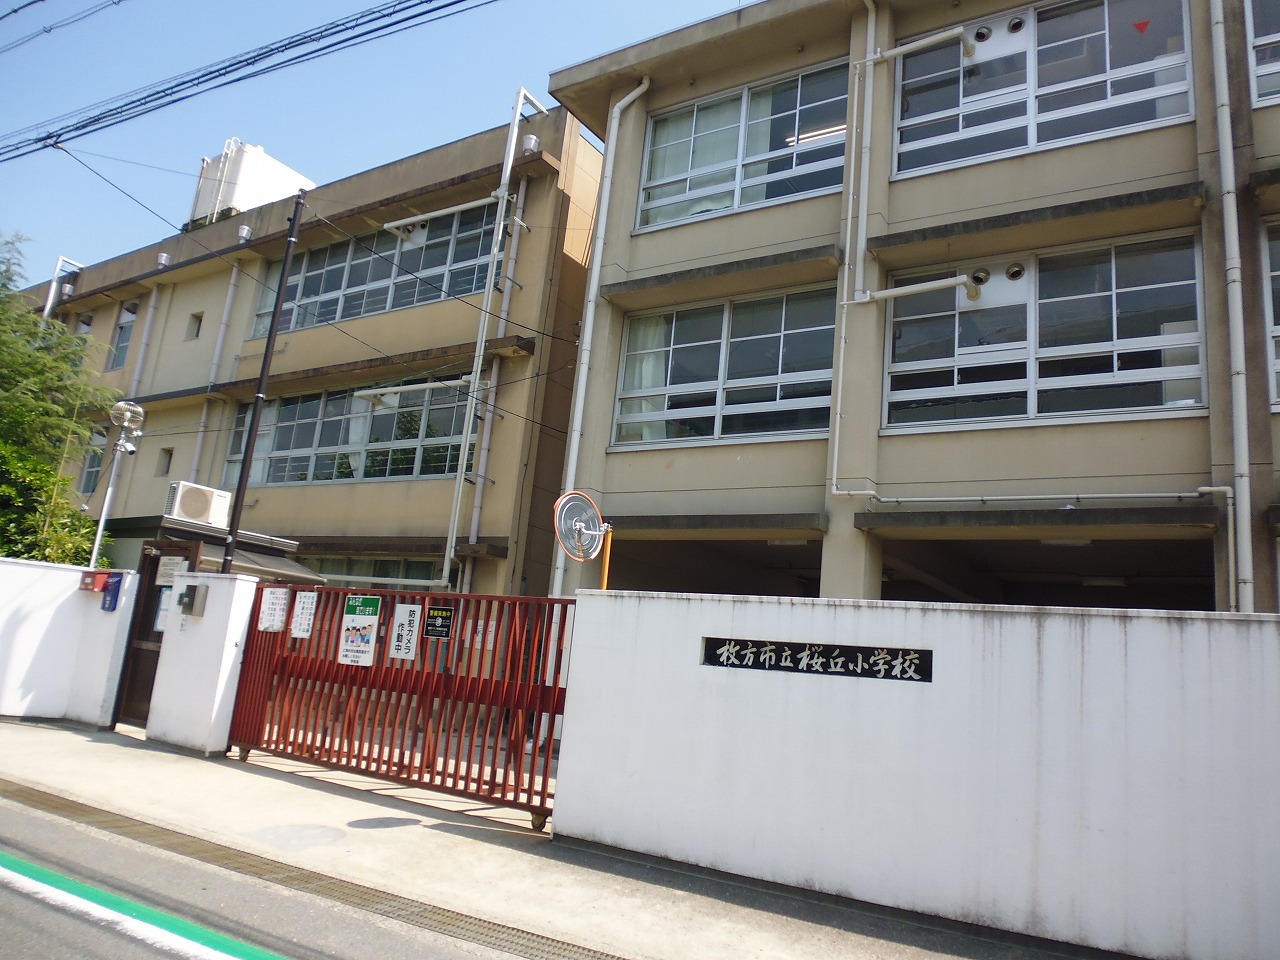 Primary school. 373m to Hirakata Municipal Sakuragaoka Elementary School (elementary school)